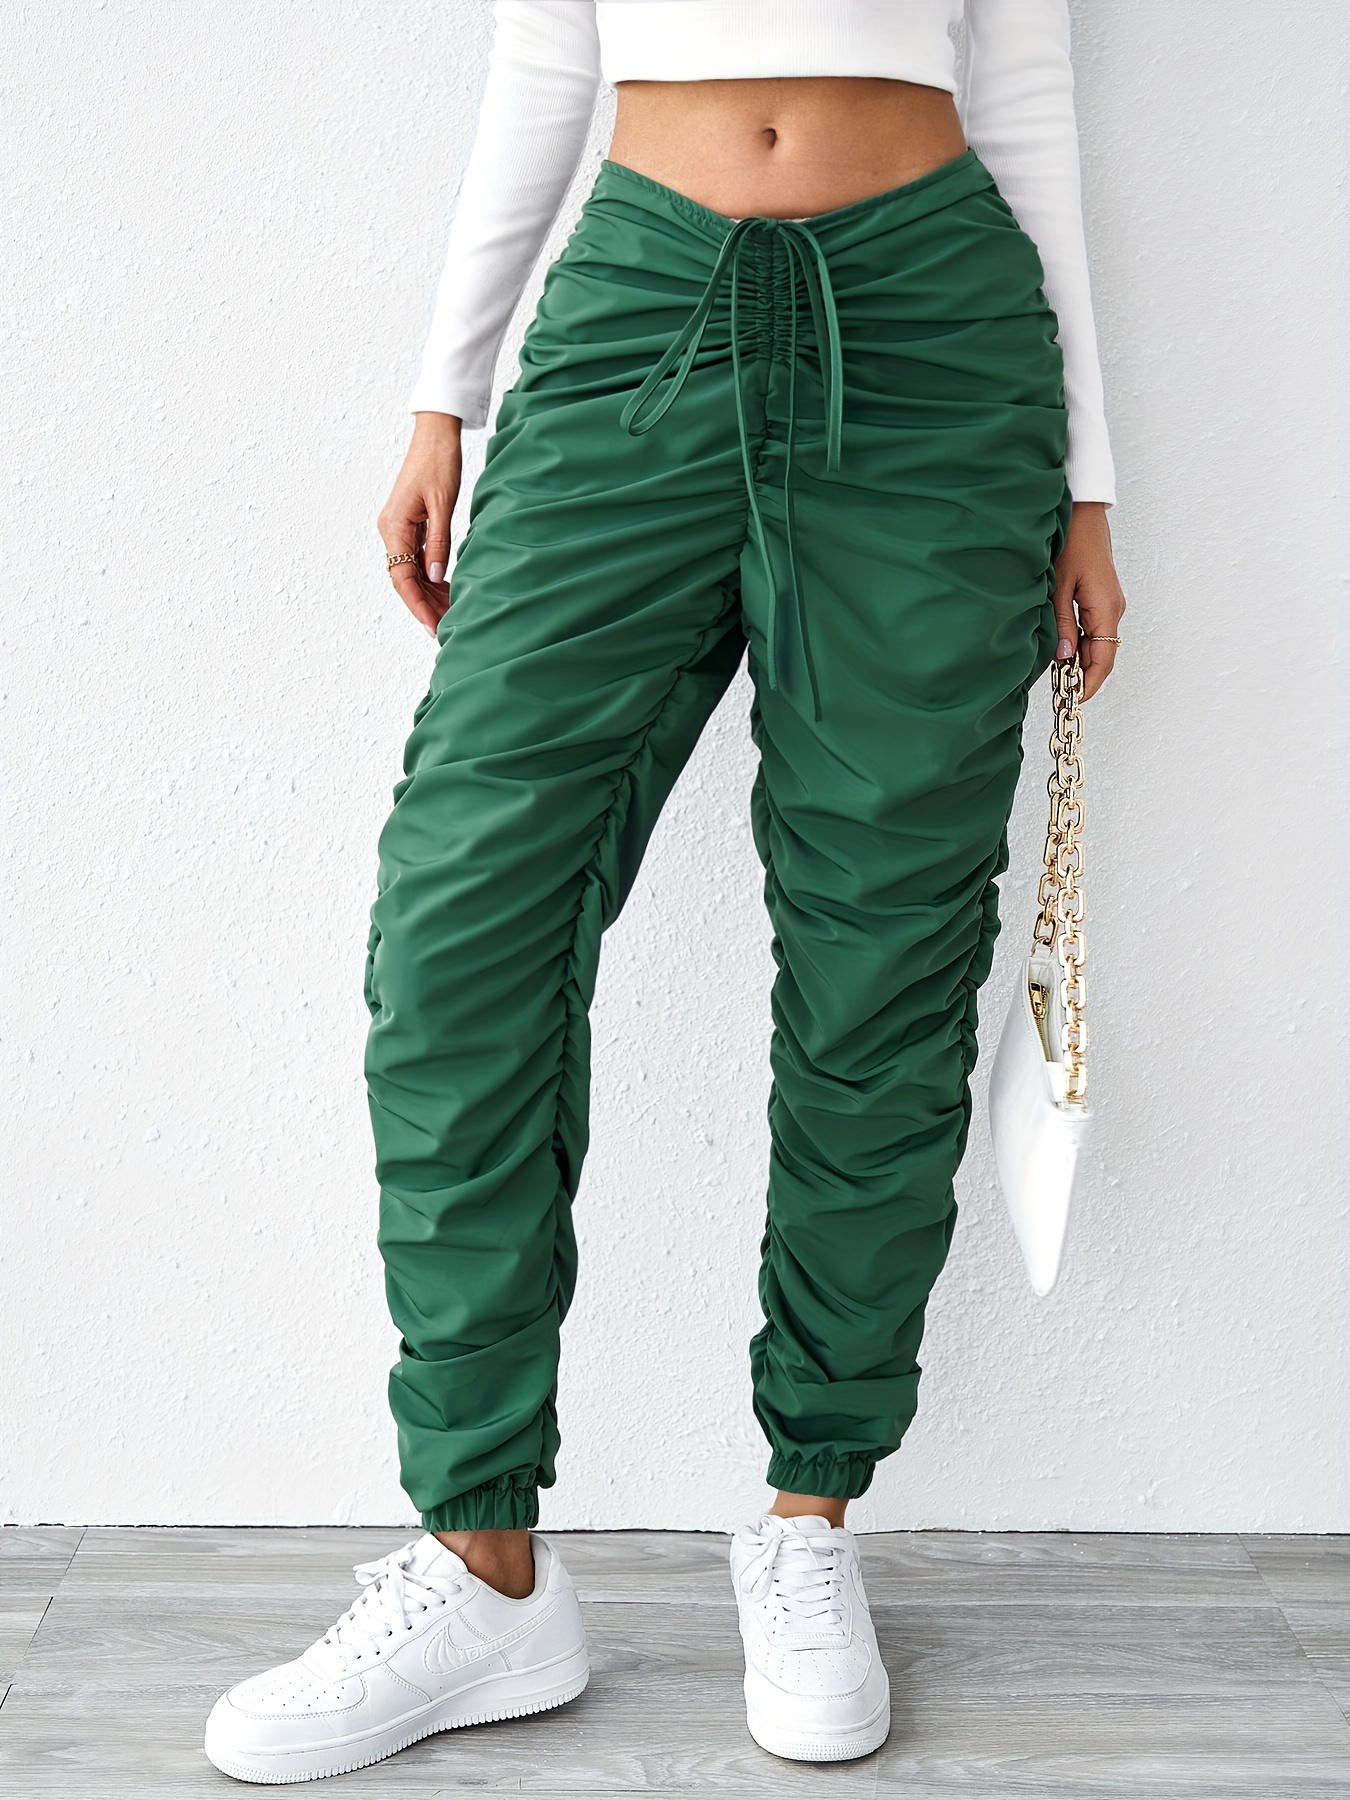 Green Pants For Women - Temu Canada